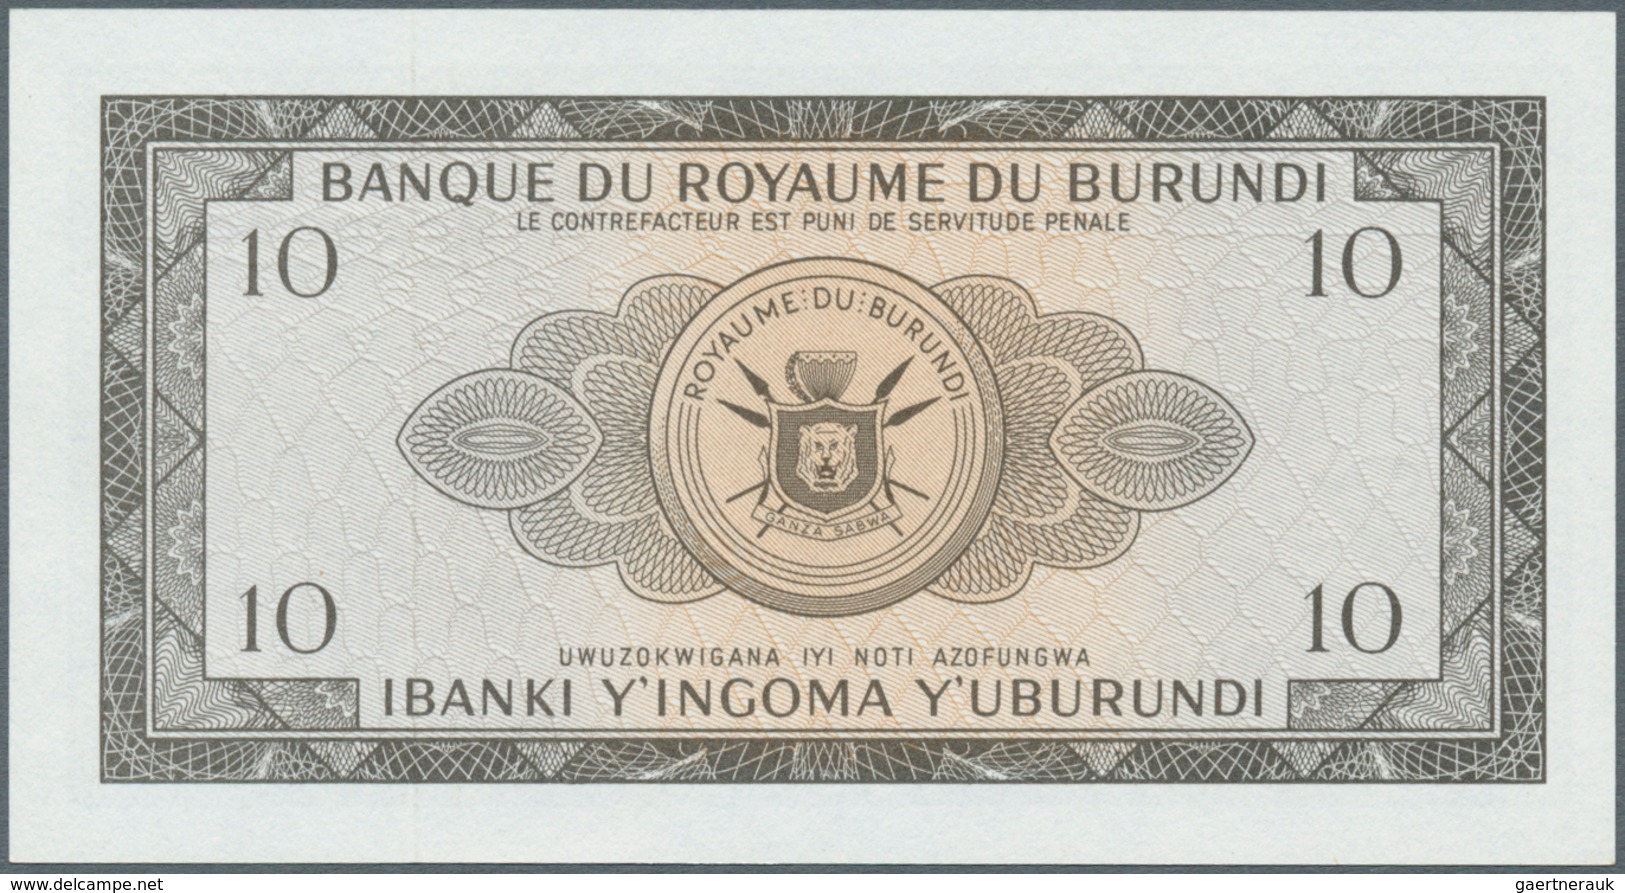 01235 Burundi: 10 Francs 1965 P. 9 In Condition: UNC. - Burundi